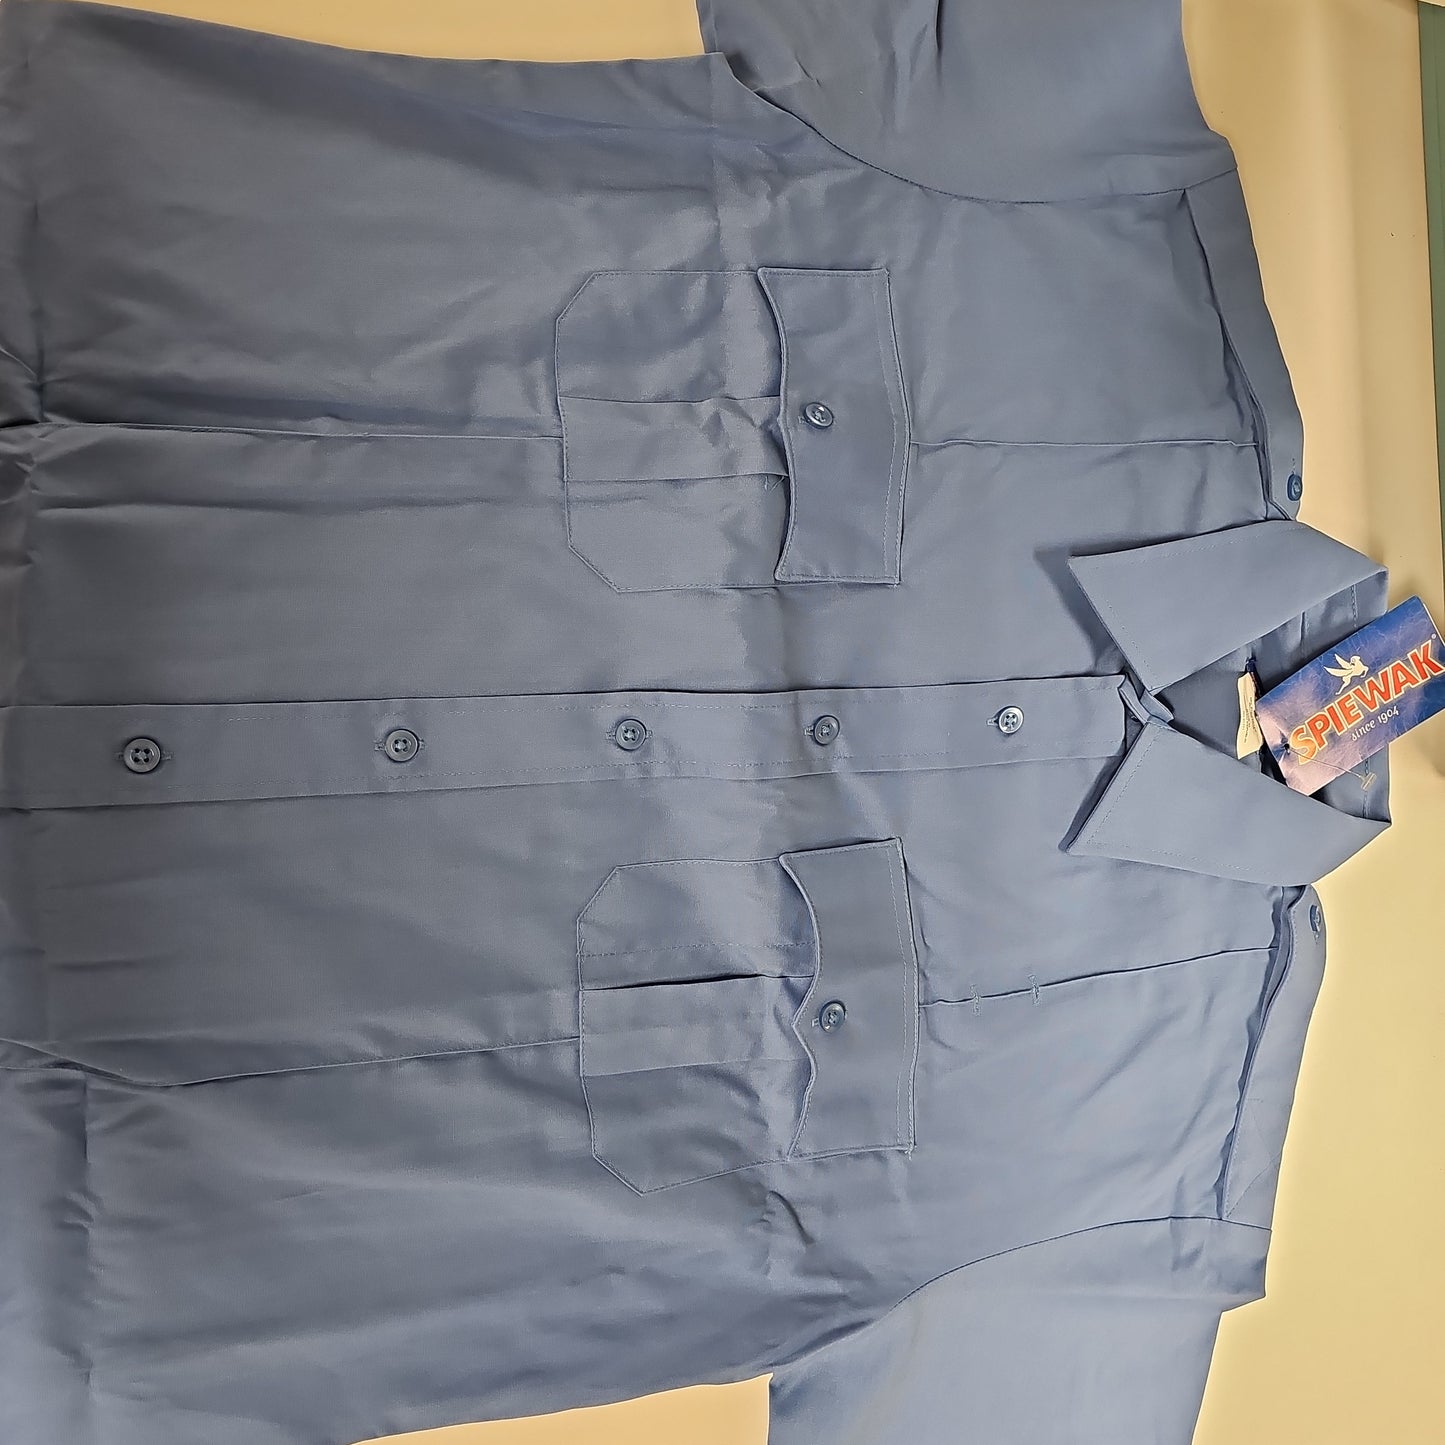 Shirt: Uniform S/S, 65/35 PolyCotton, Light Blue, Large/Reg SPDU80-Large/R